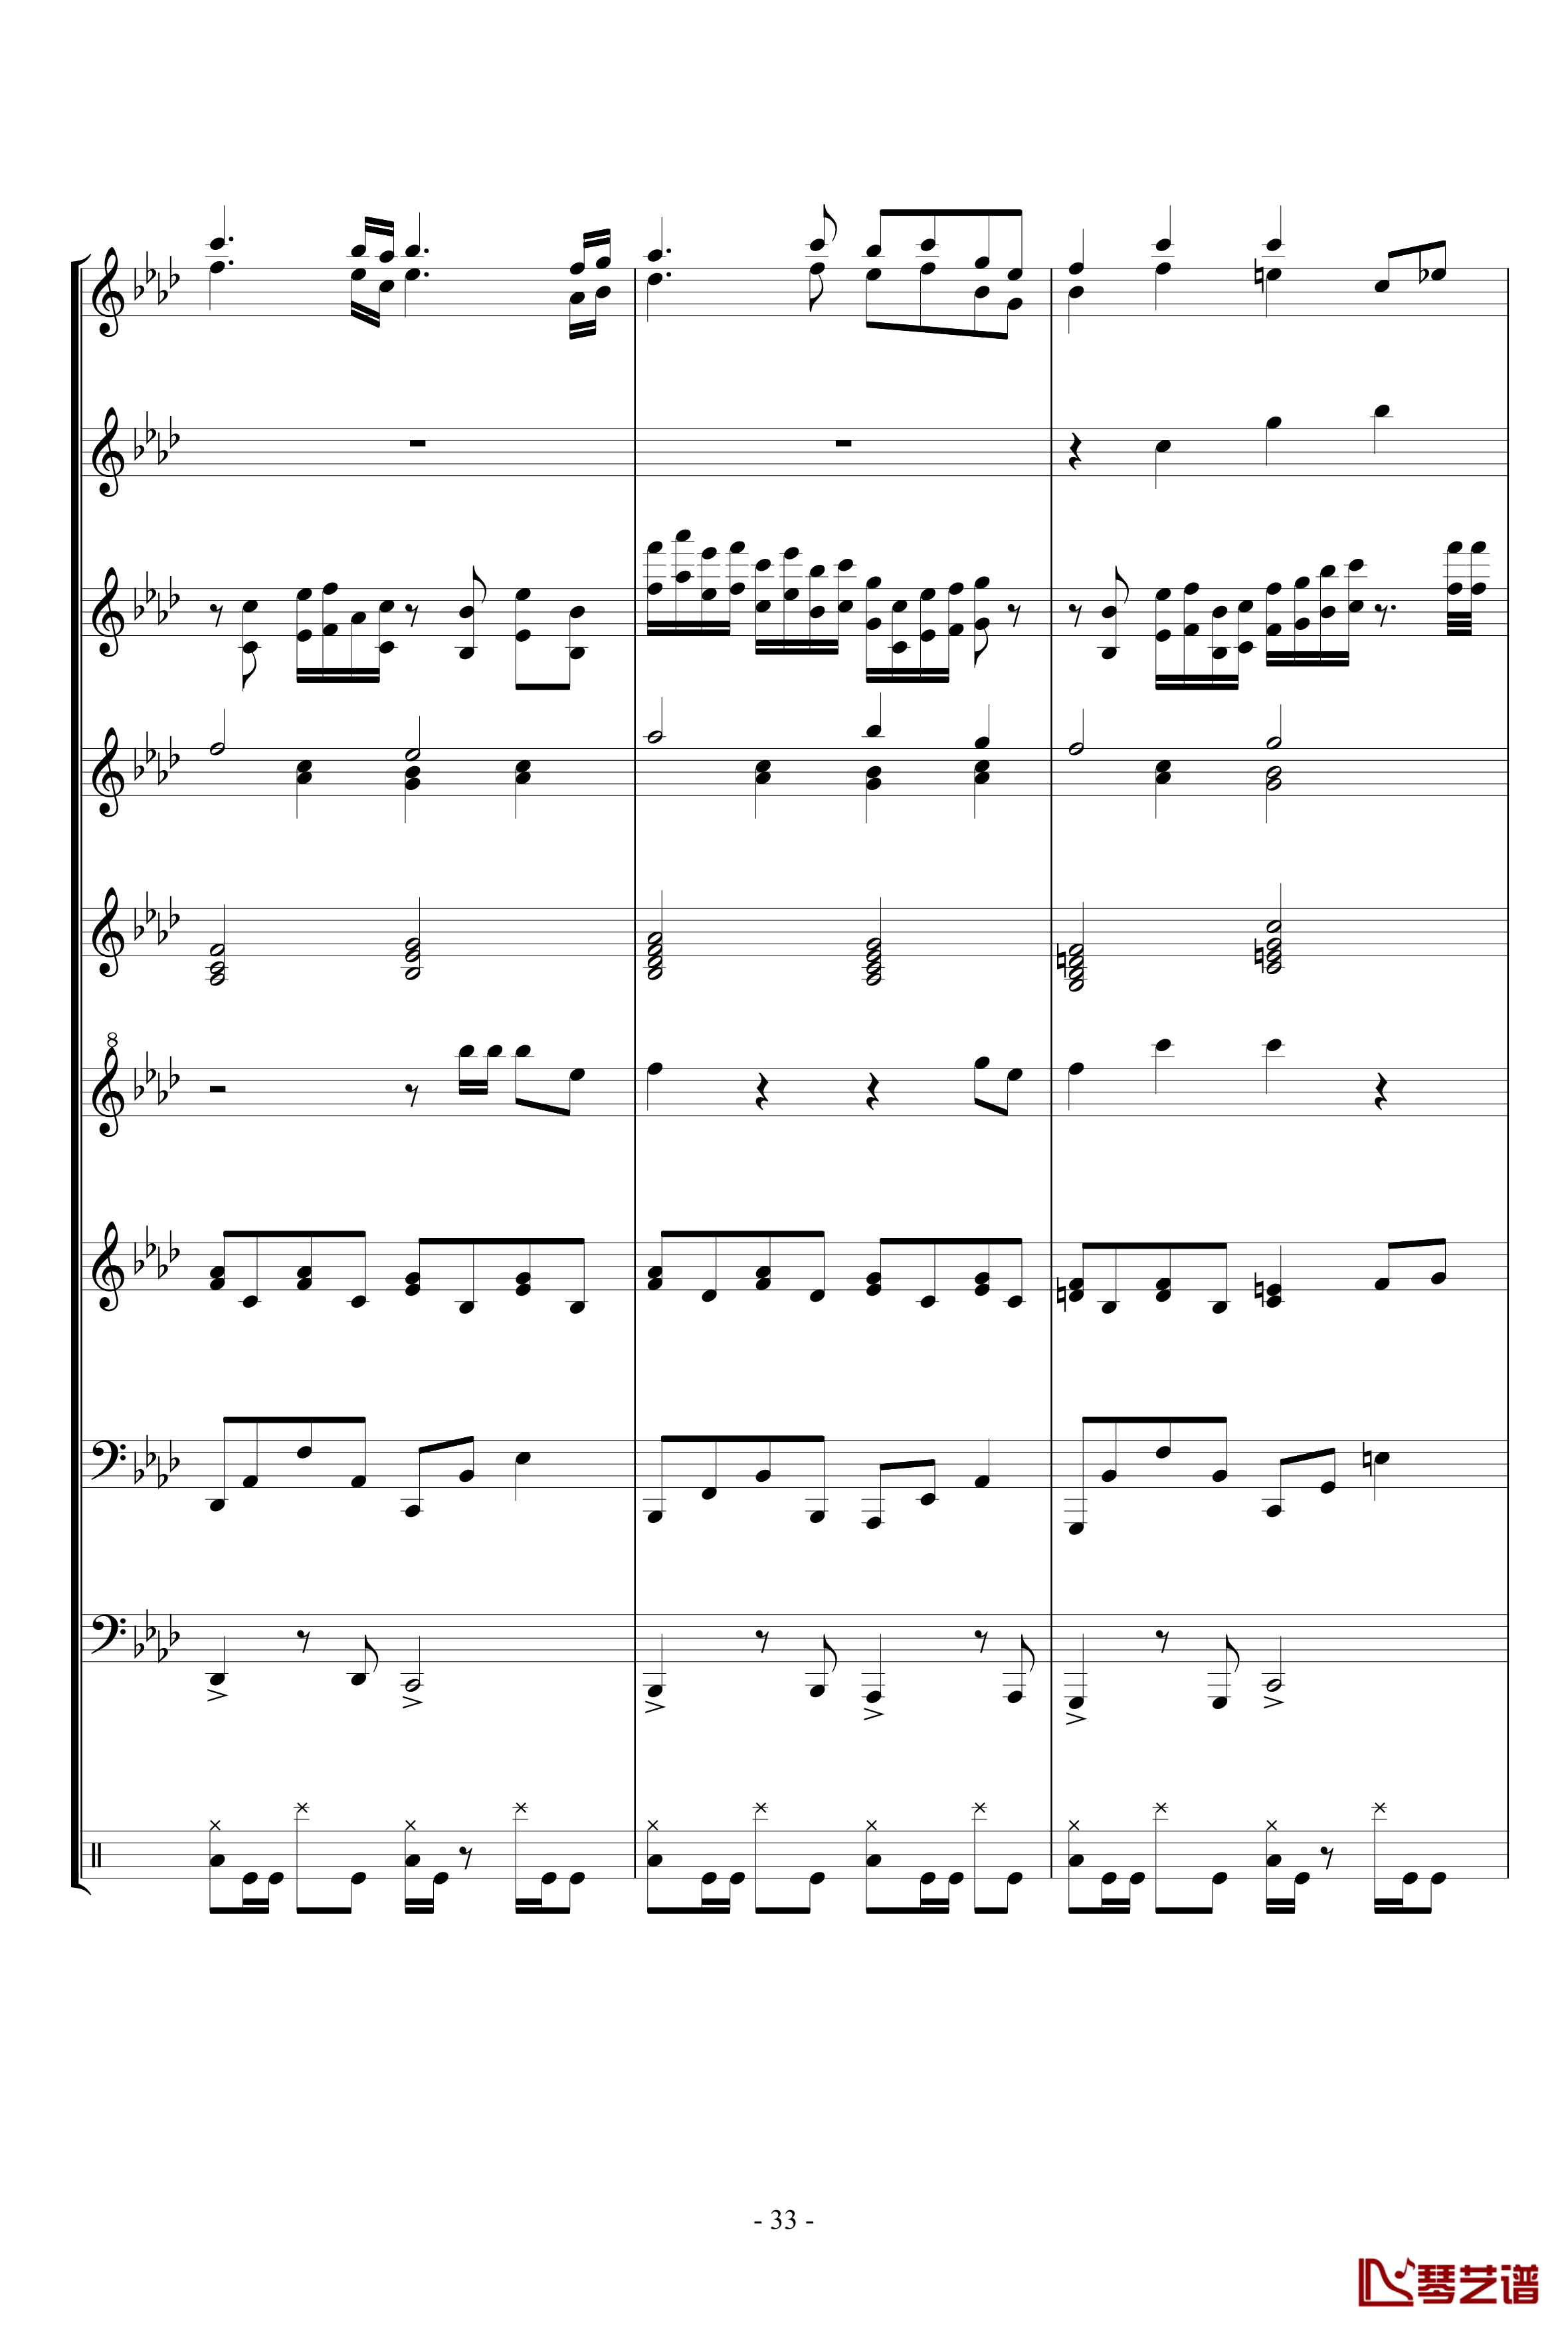 キミガタメ 钢琴谱-总谱-Suara33